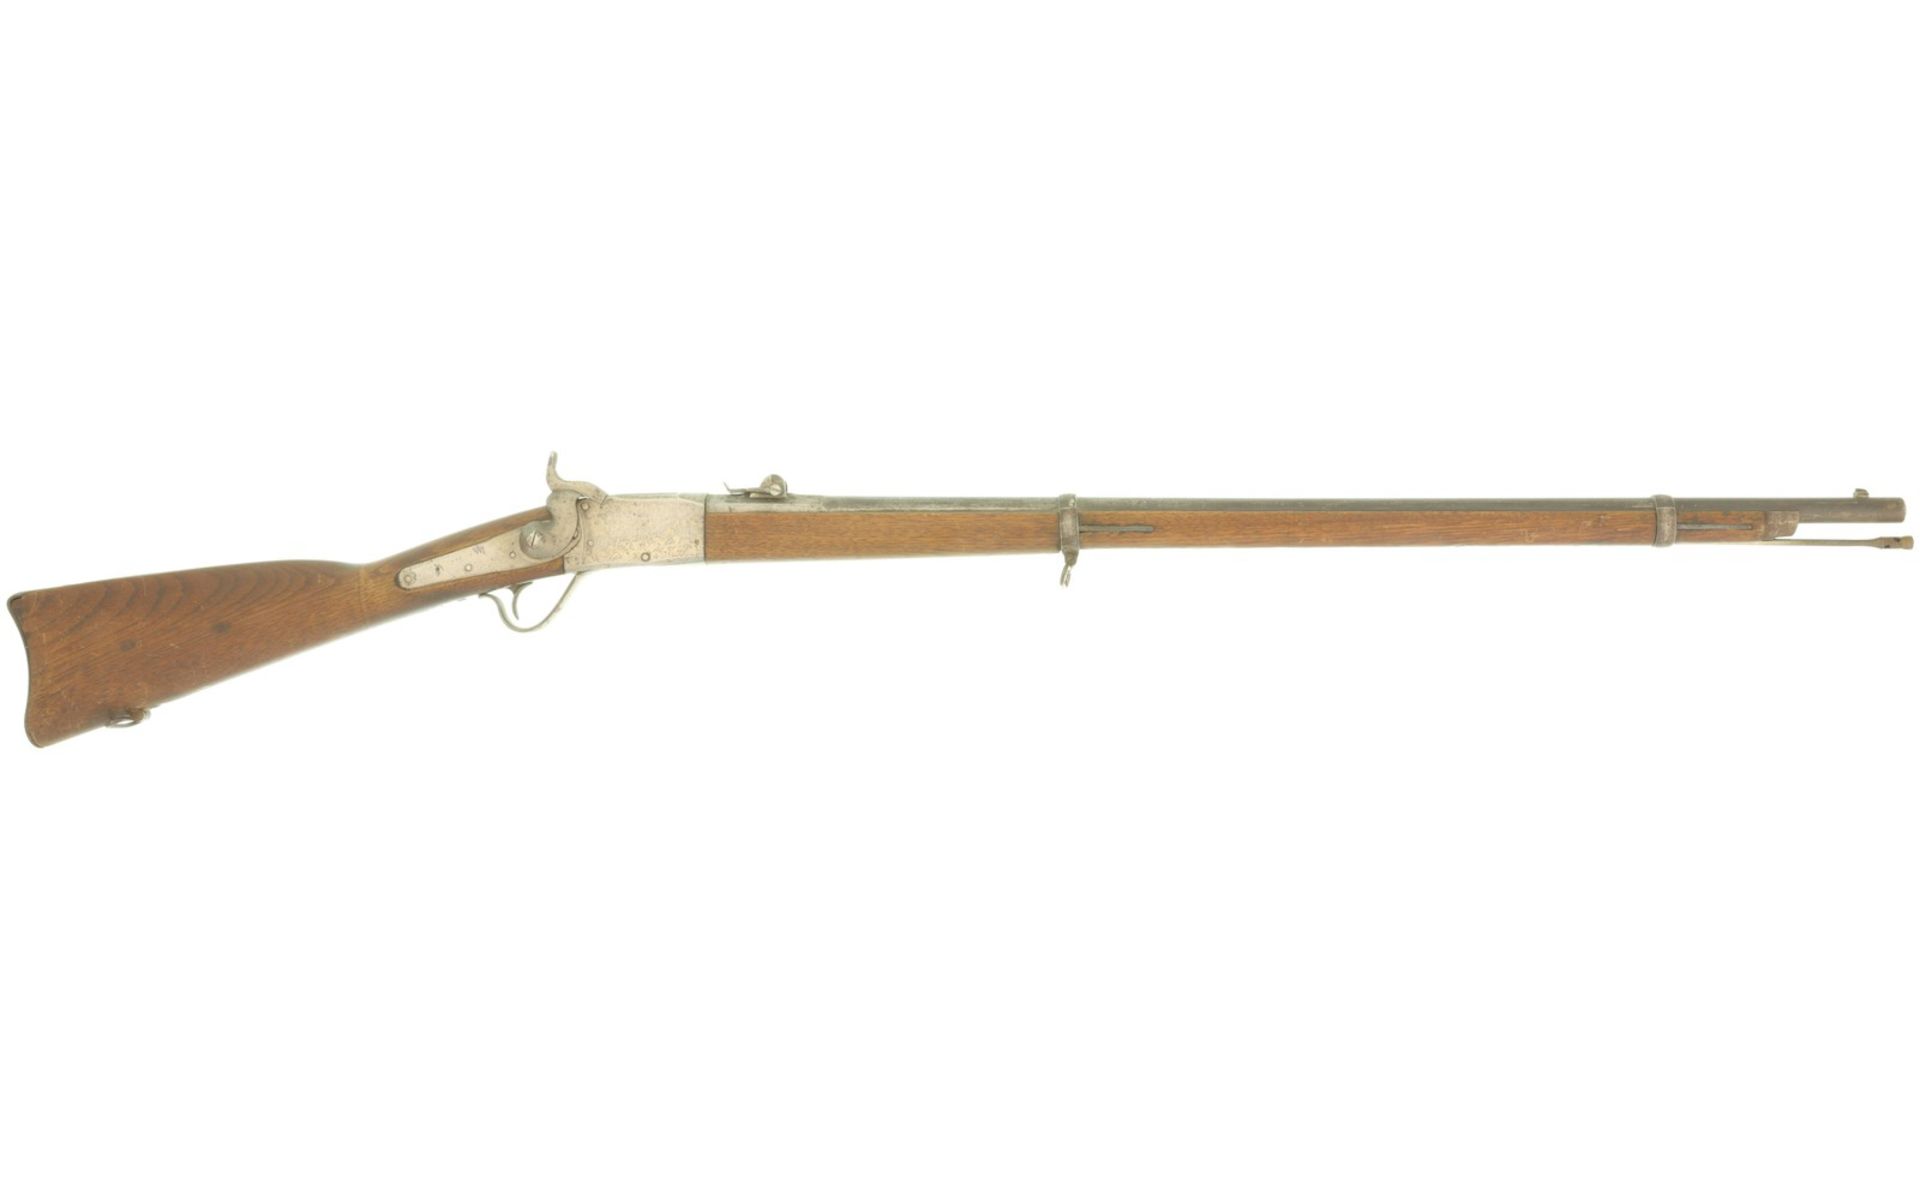 Geniegewehr Peabody 1867/77, Kal. 10.4mmRZ